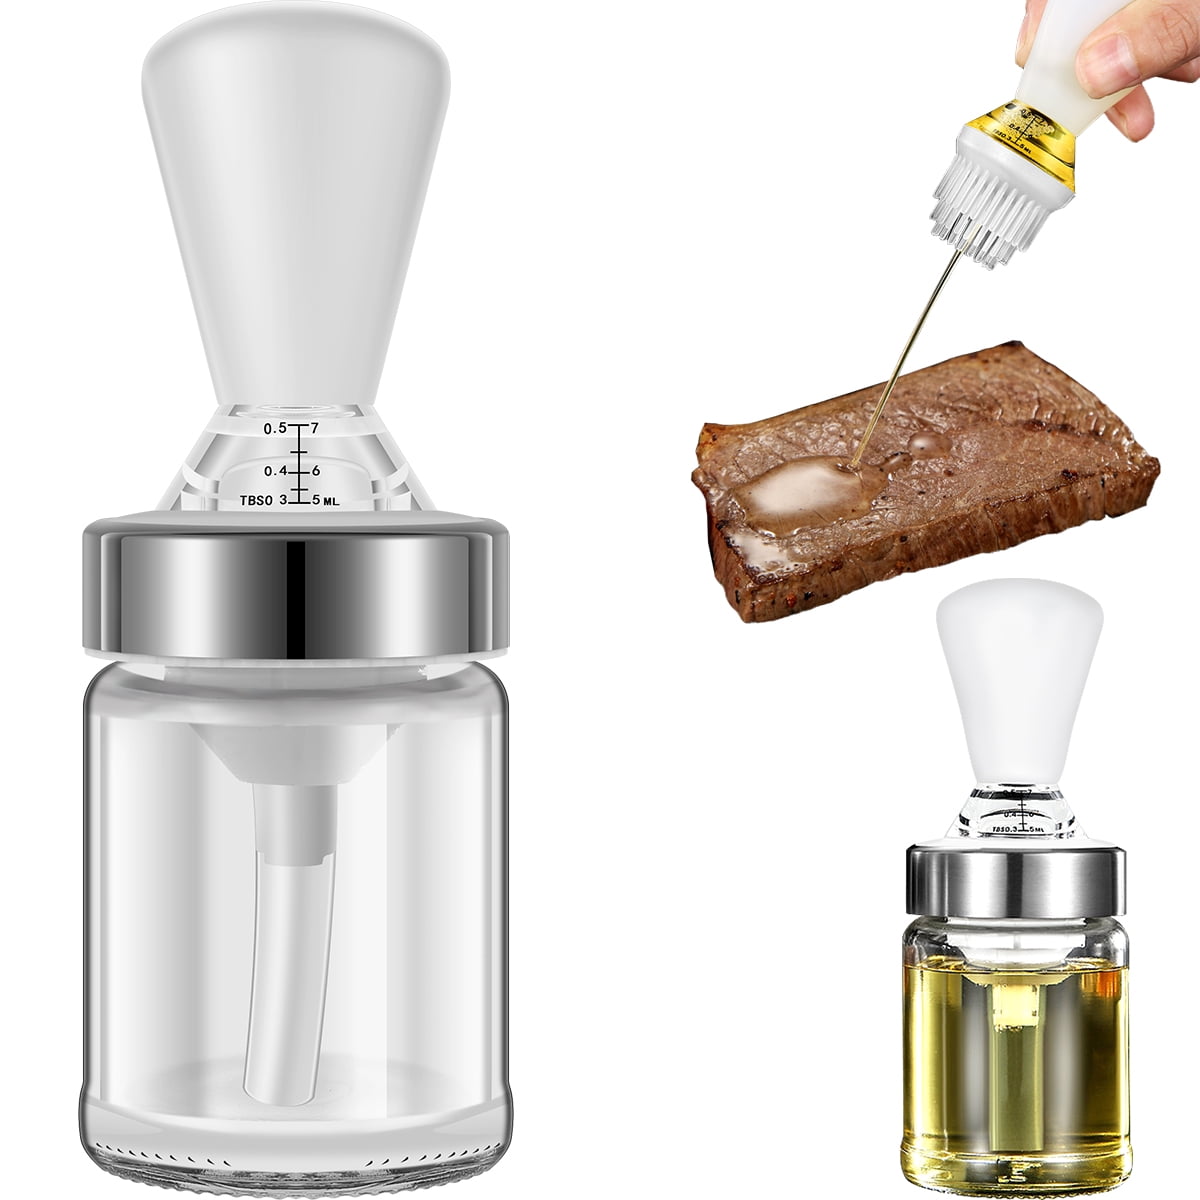 2 in 1 Oil Dispenser and Oil Sprayer - 450ml Oil Bottle – Roisse